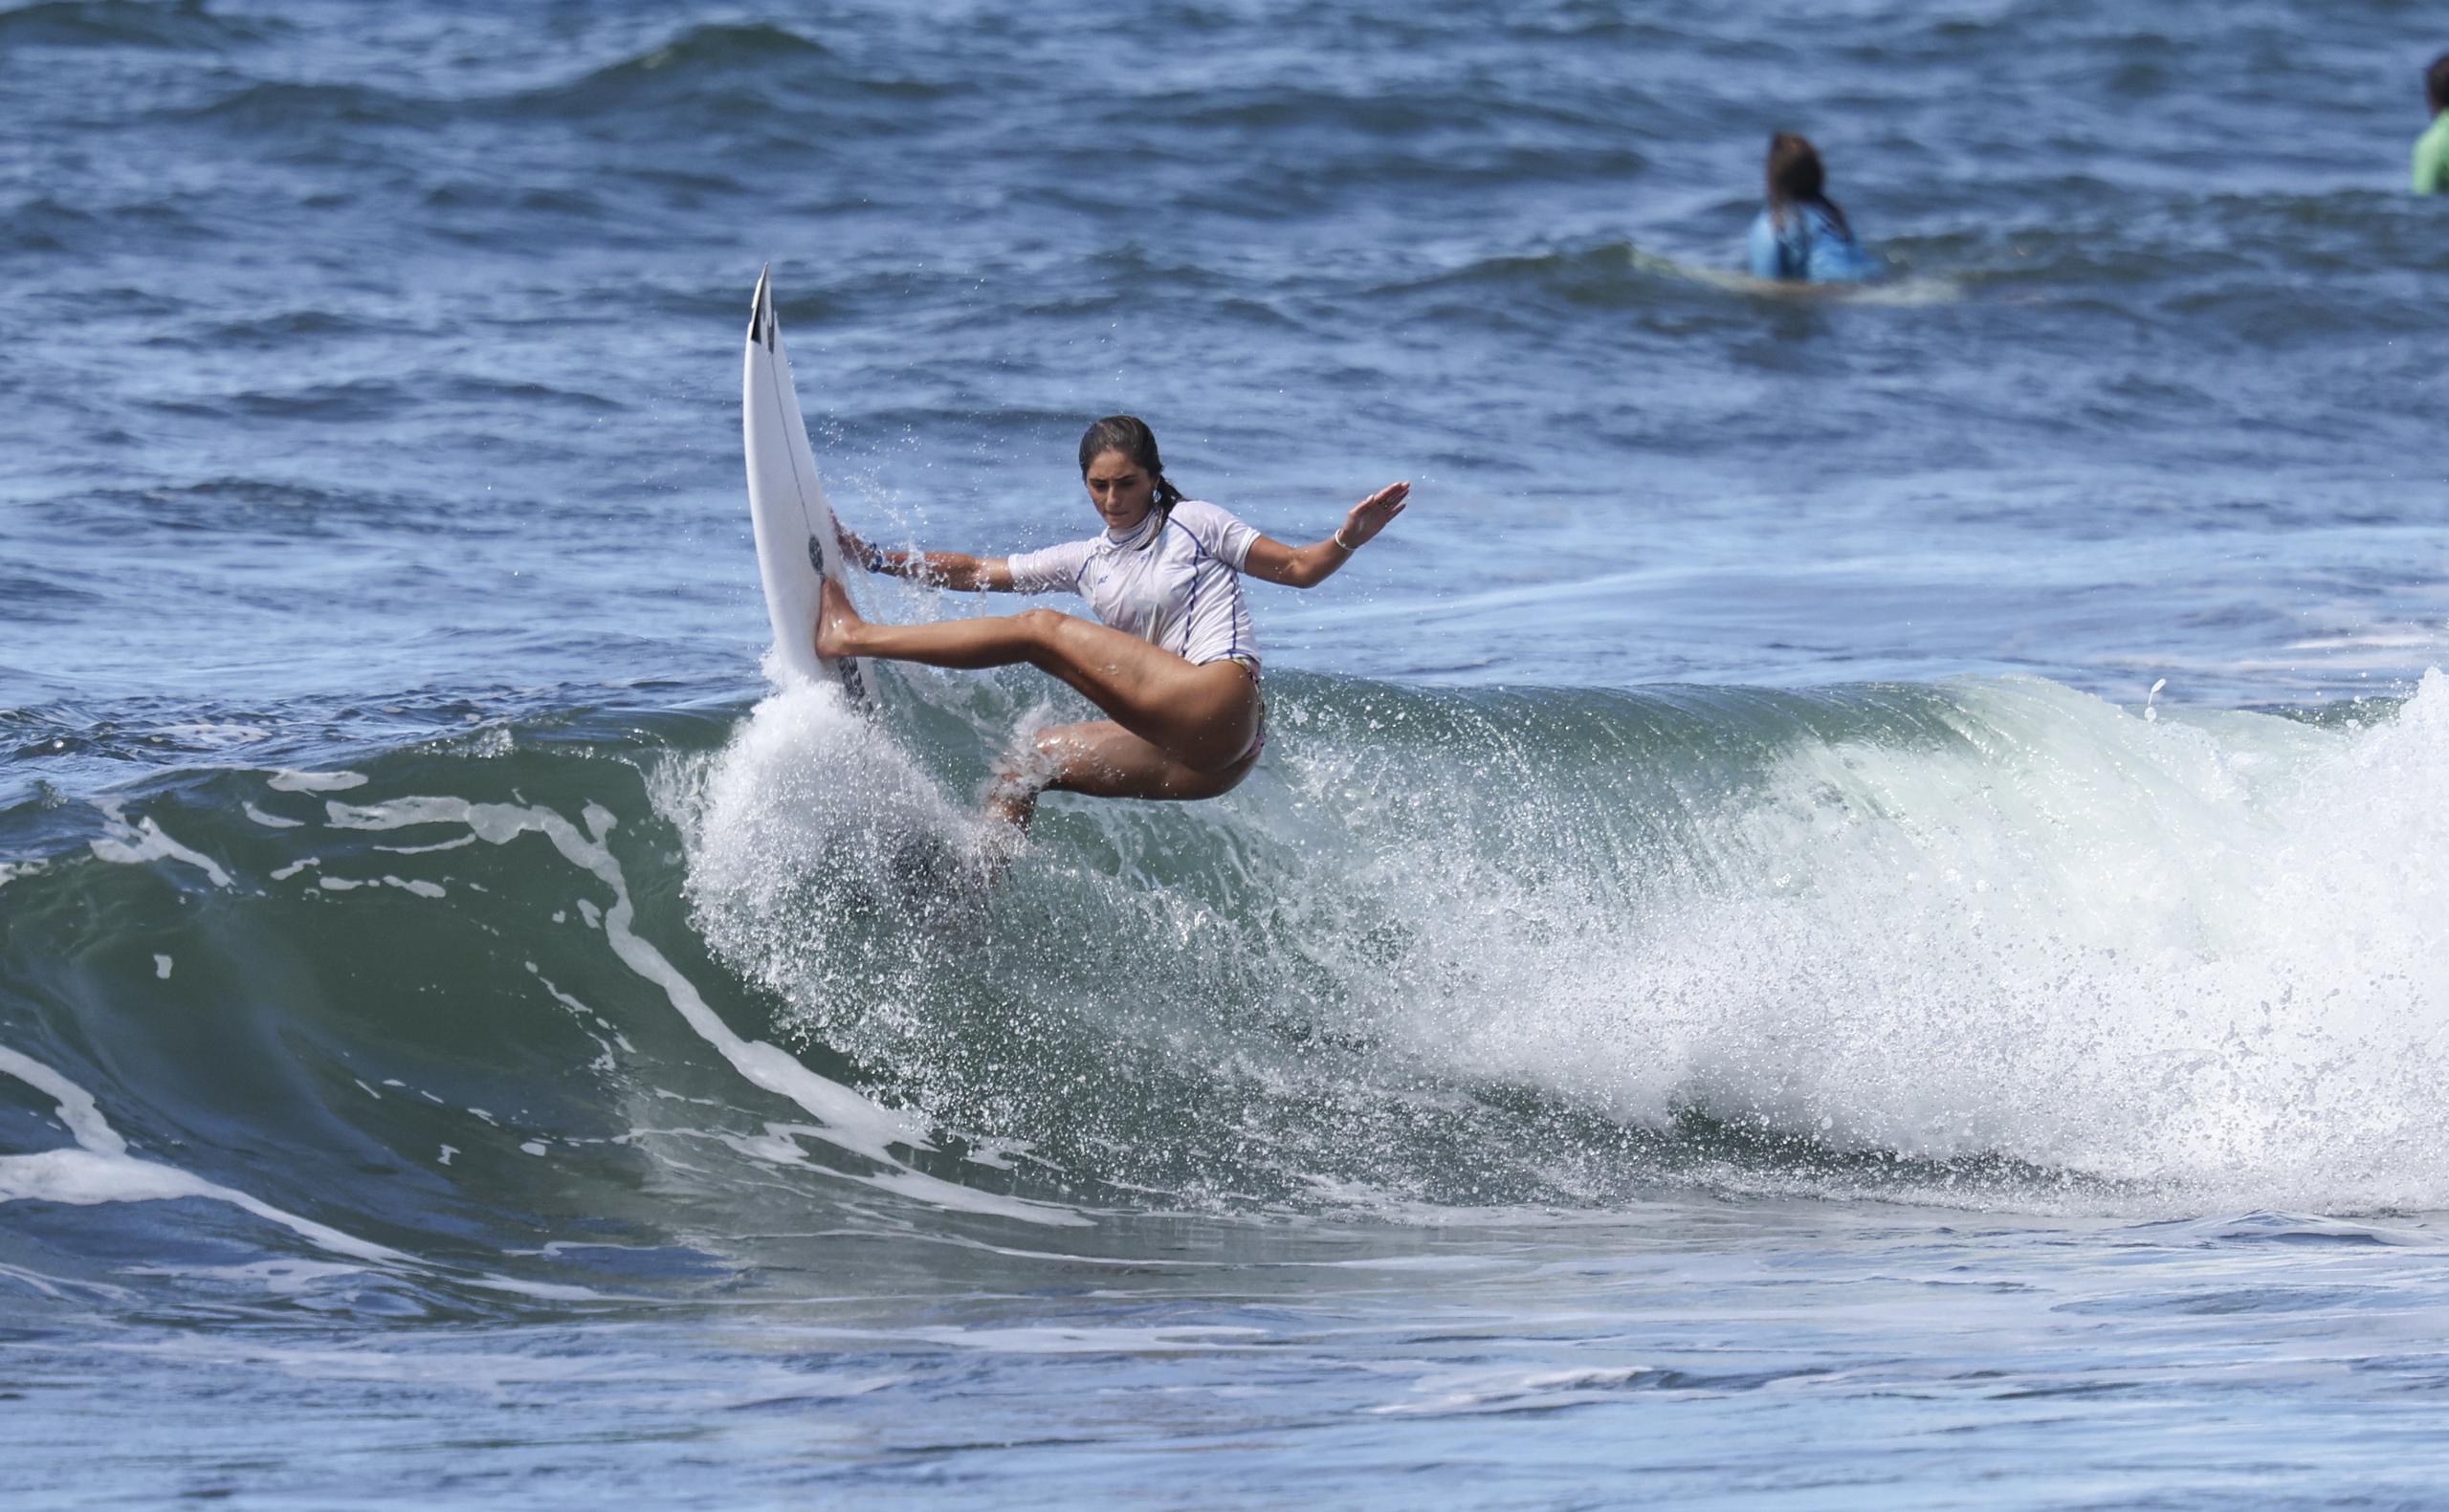 La surfer Havanna Cabrera será una de las atletas que buscará clasificar a las Olimpiadas desde finales de febrero cuando compitan en el Mundial de Surf de tabla corta en Puerto Rico.